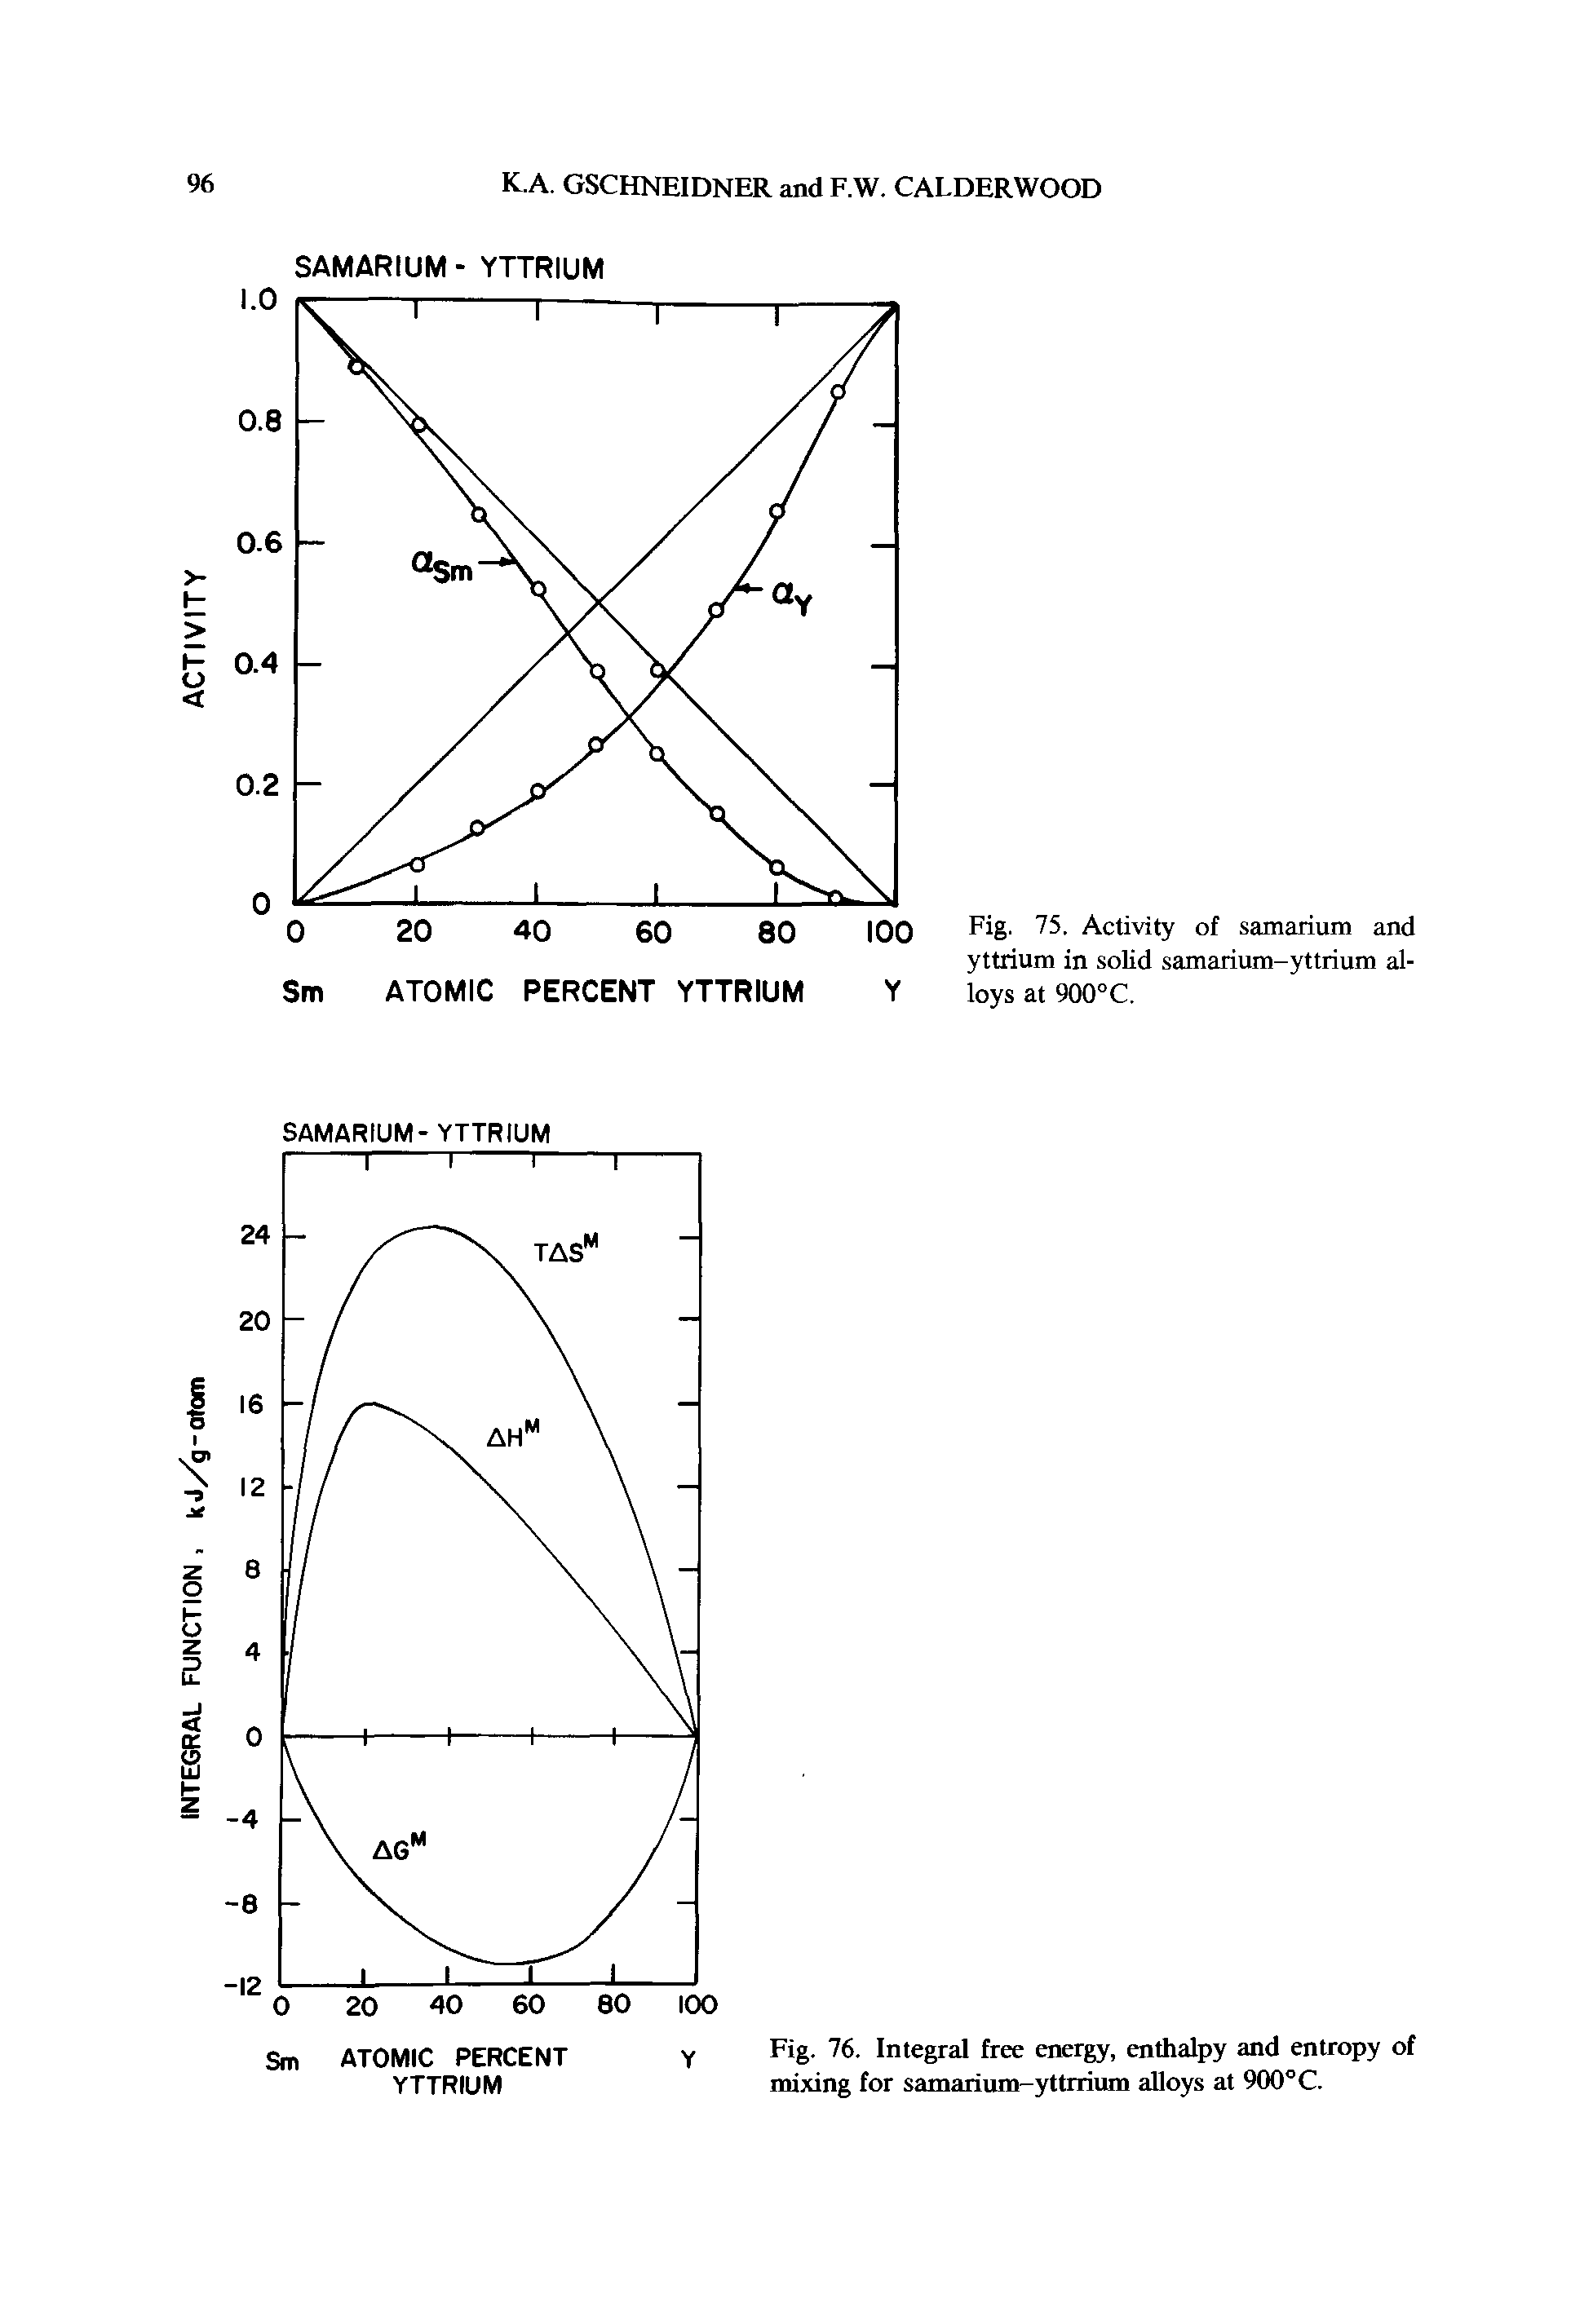 Fig. 75. Activity of samarium and yttrium in solid samarium-yttrium alloys at 900°C.